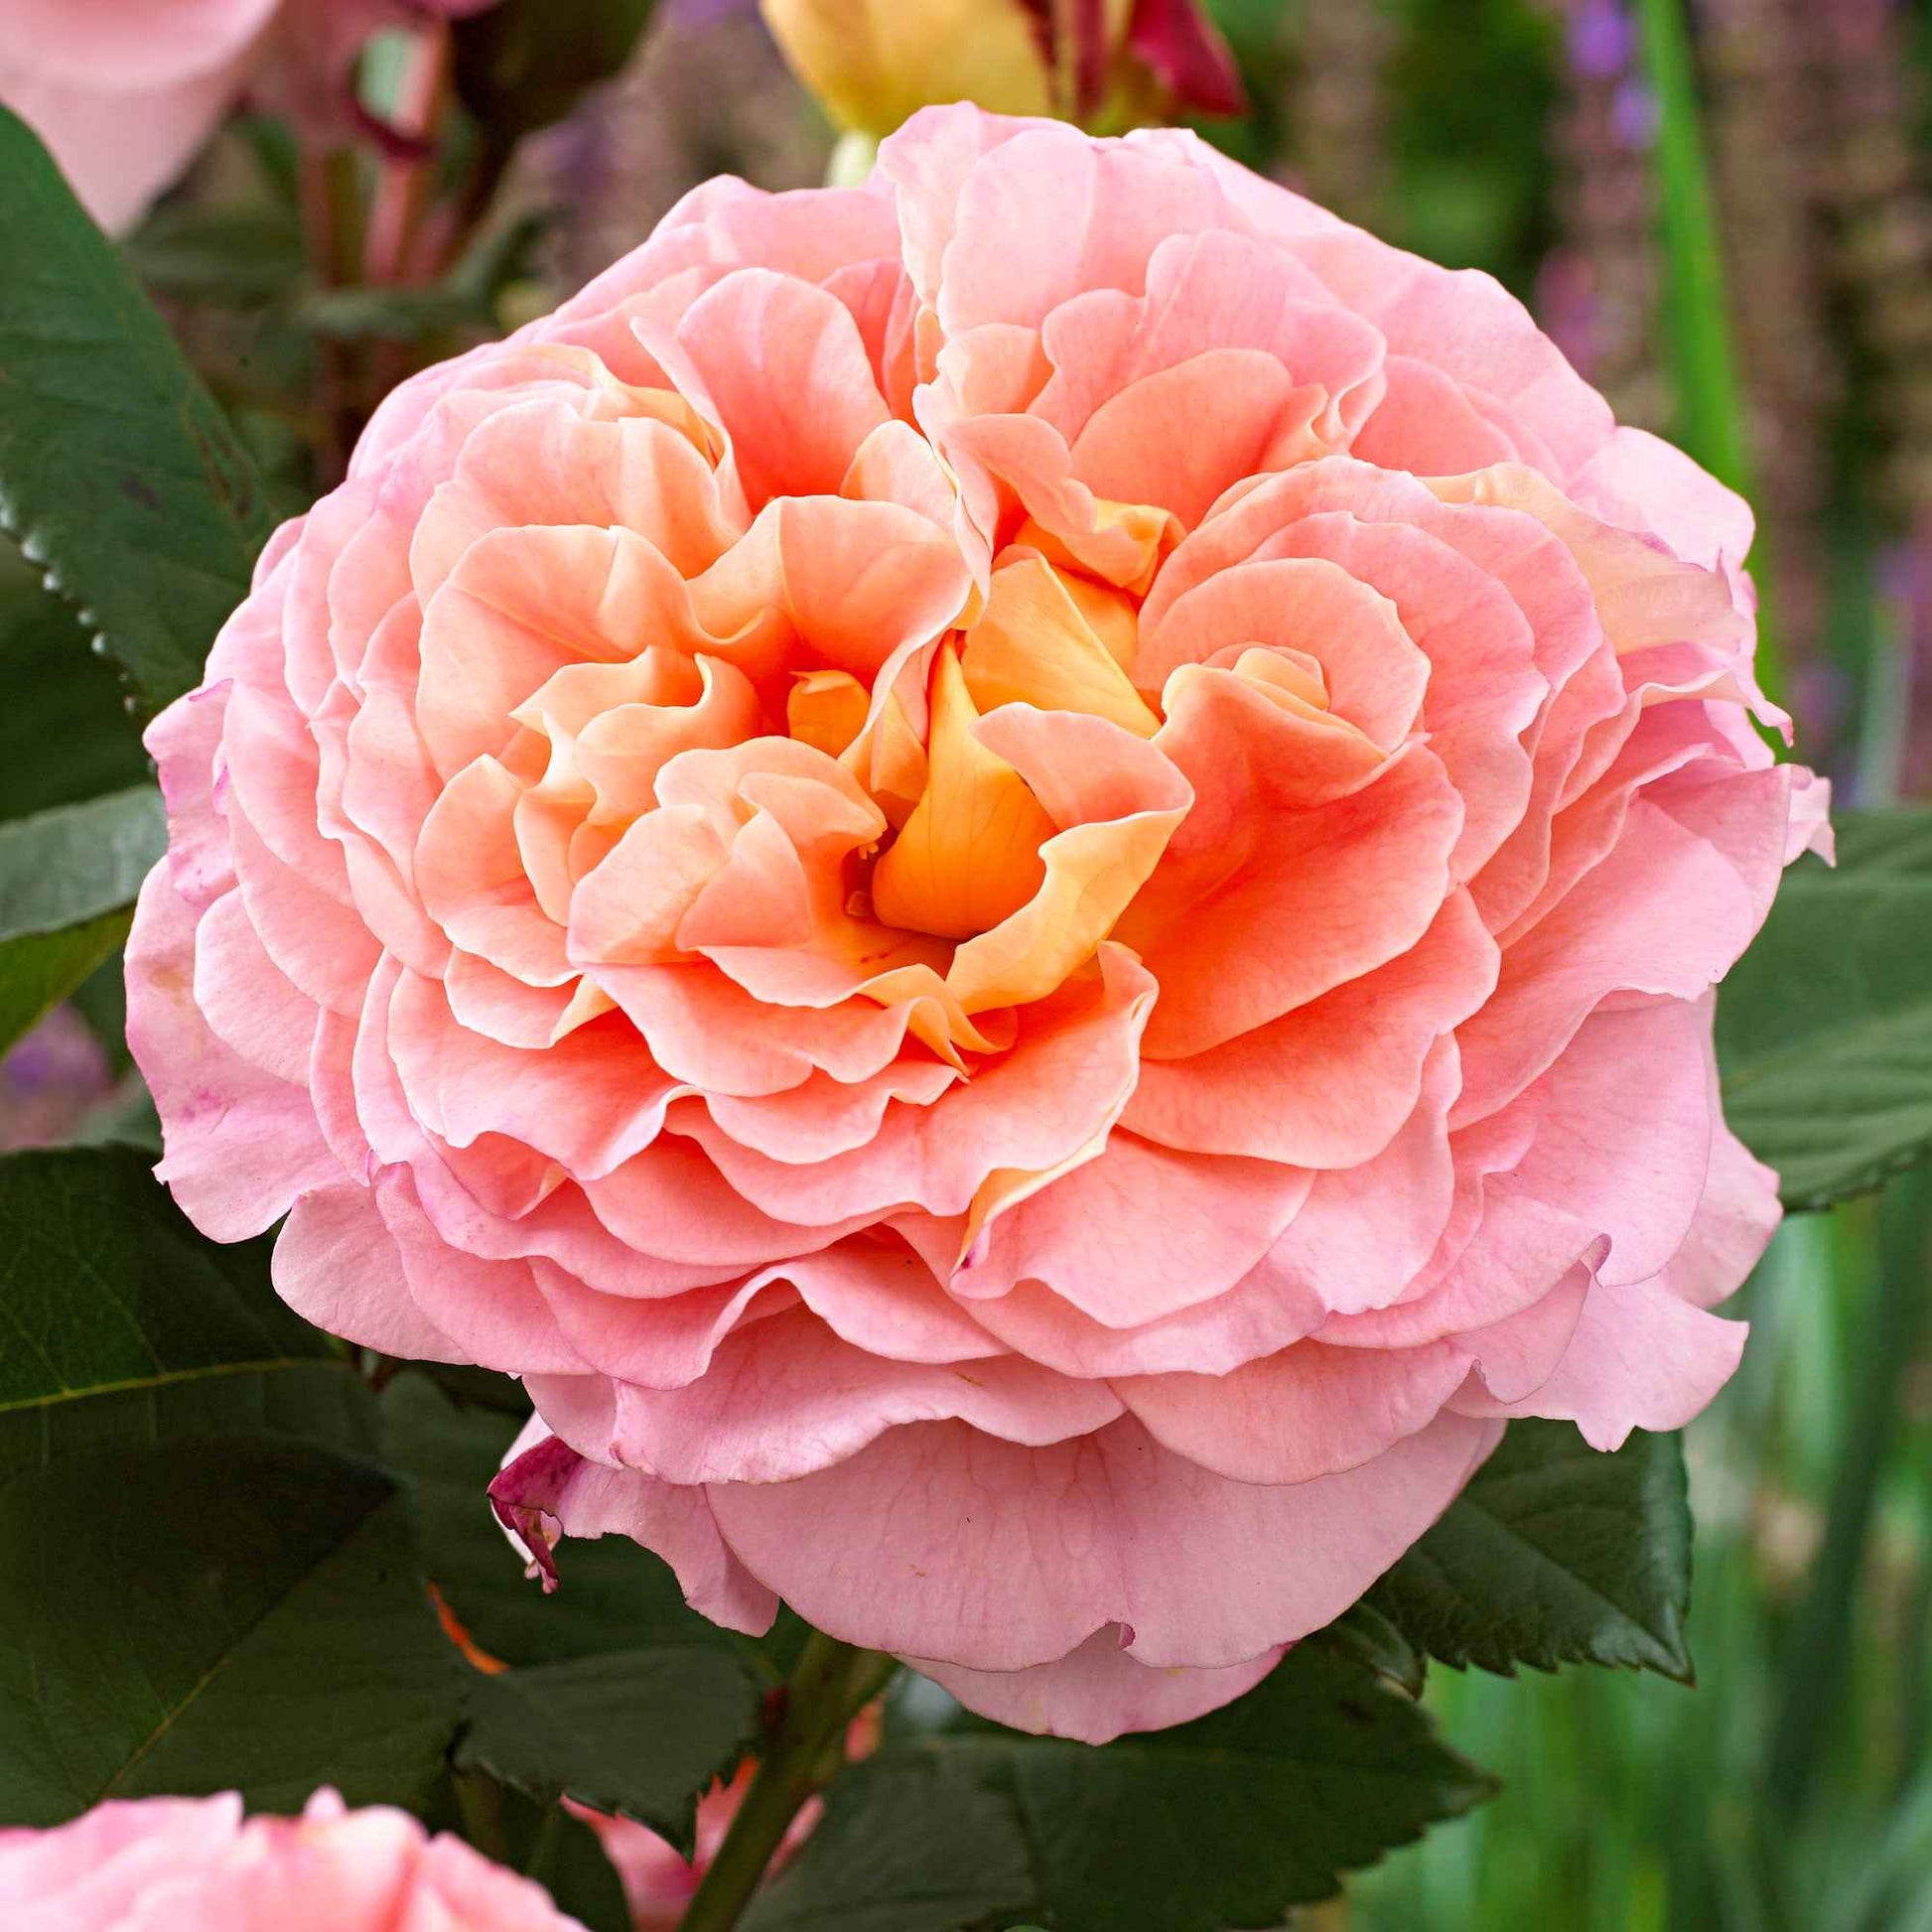 3x Grootbloemige roos Rosa Augusta Luise ® Oranje-Roze - Bare rooted - Winterhard - Nieuw outdoor